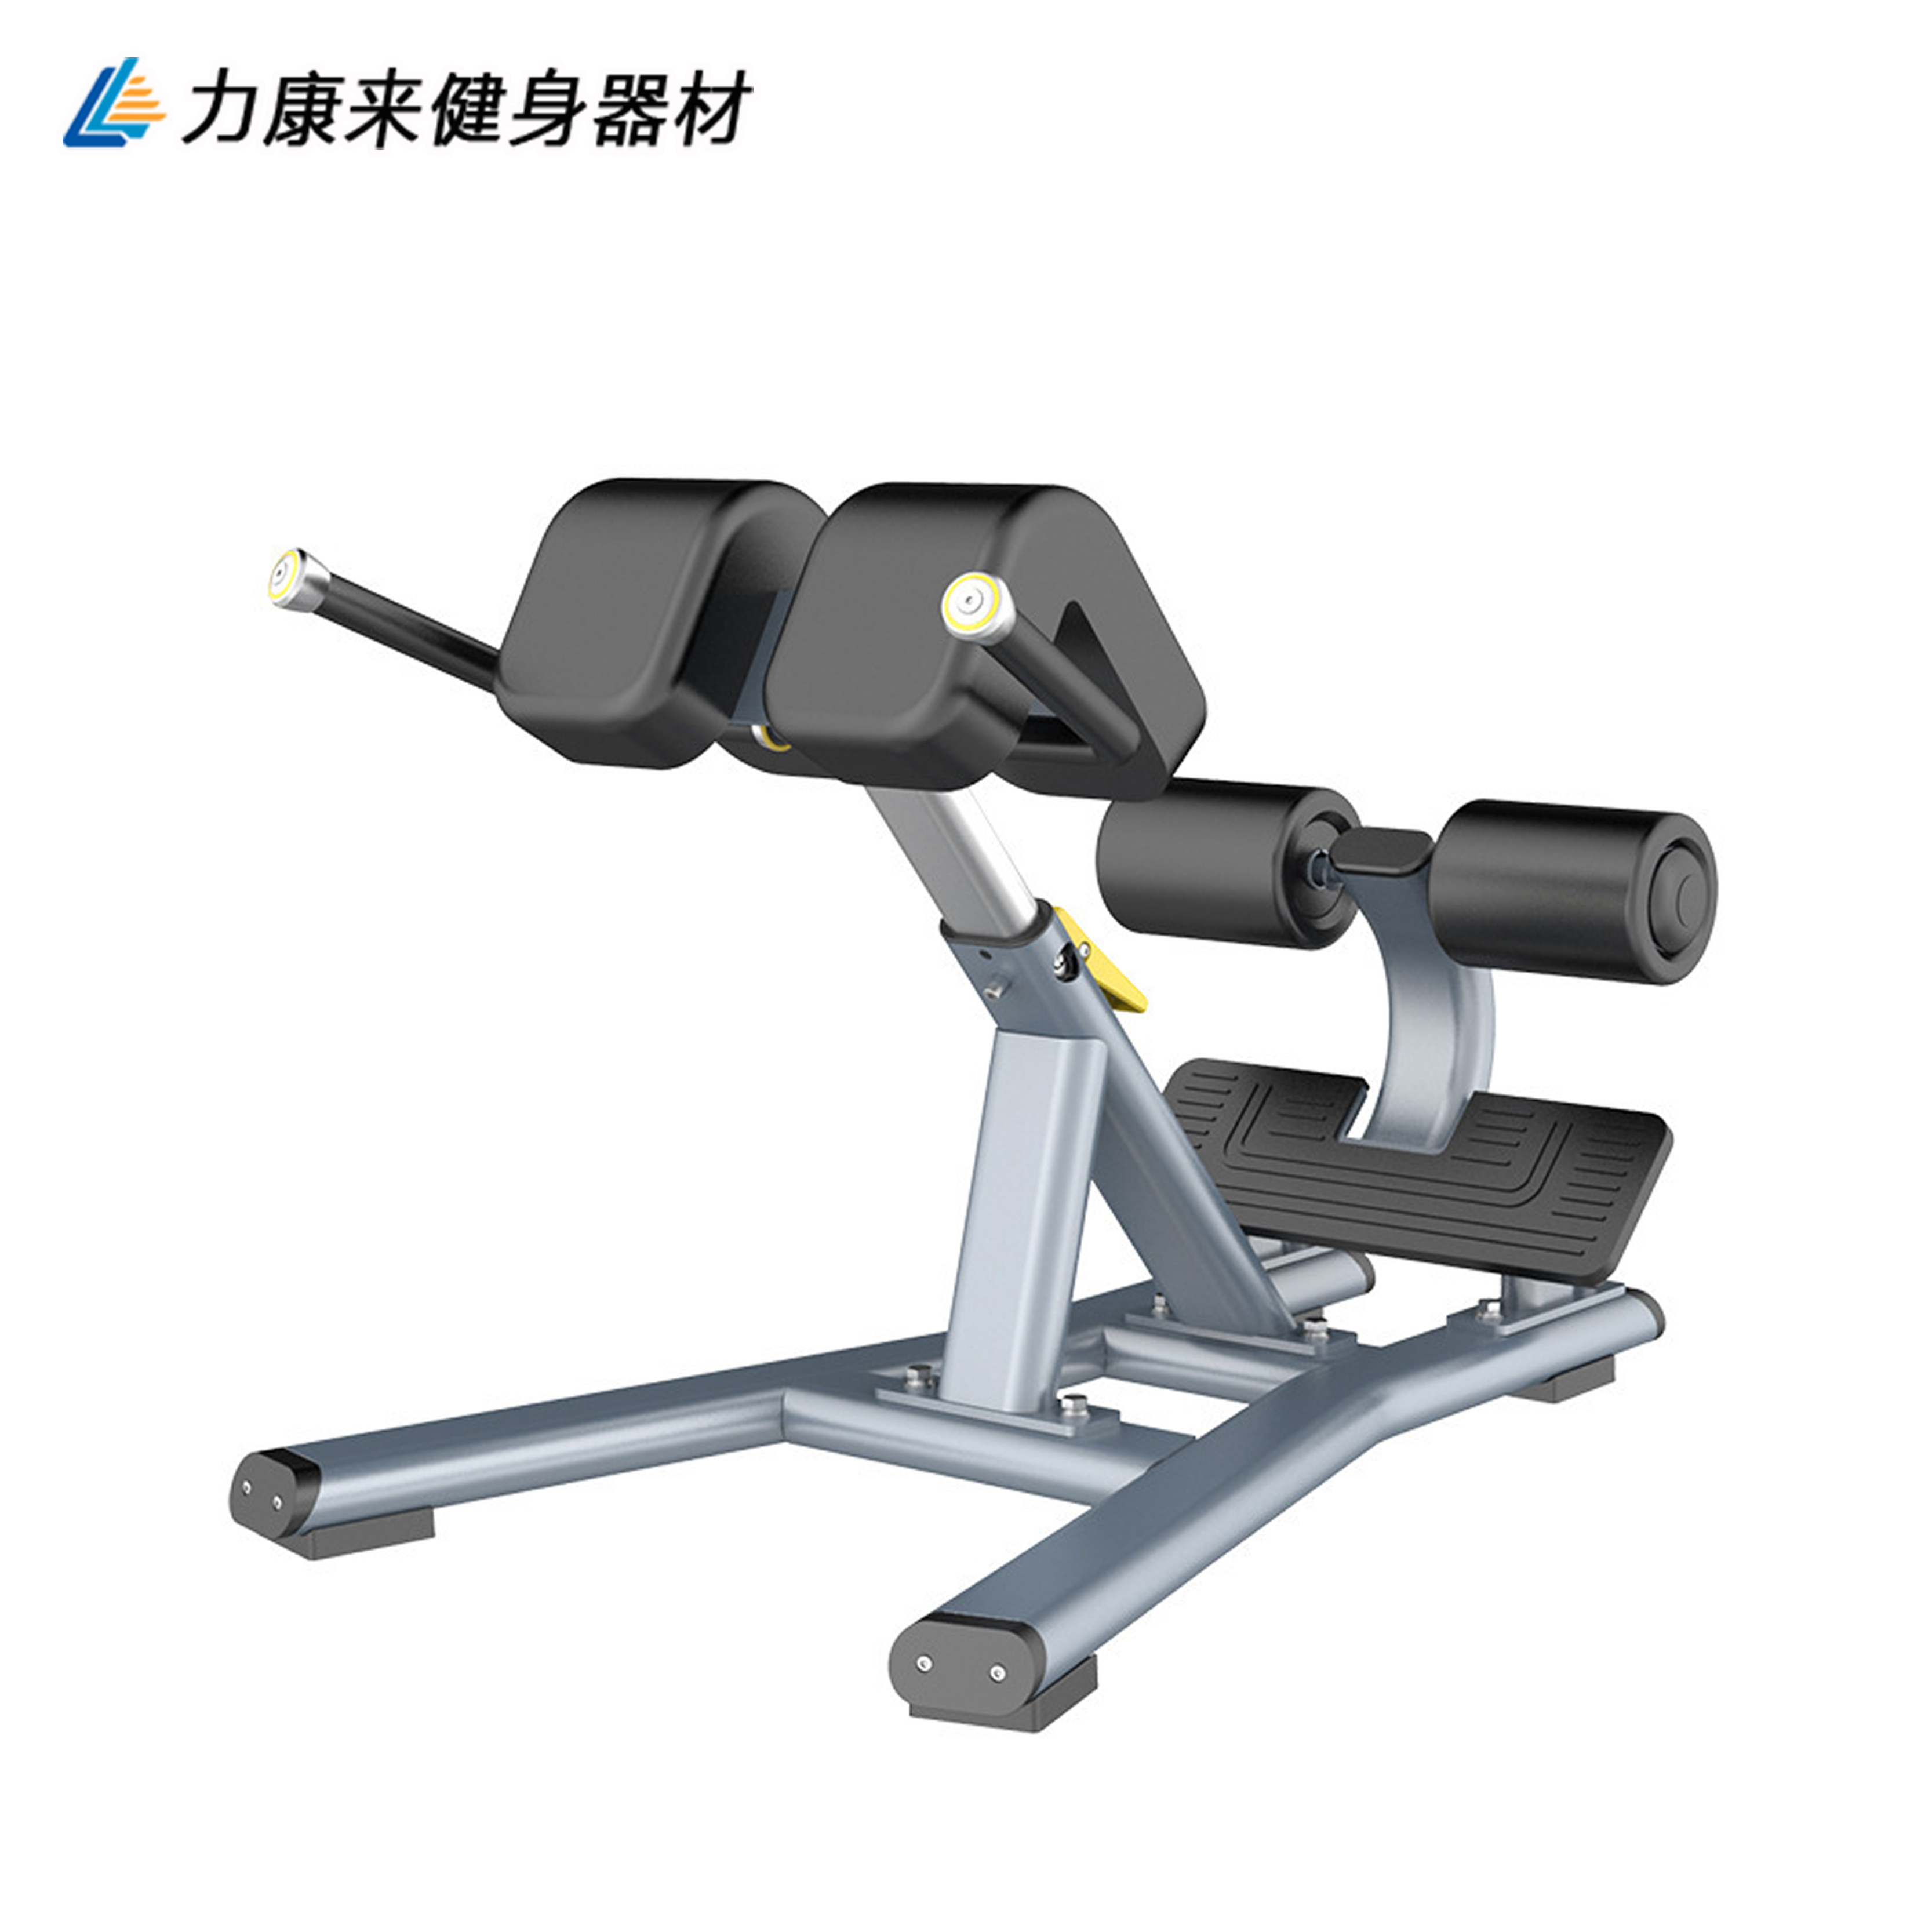 【内蒙古赤峰公园健身器材 室外健身器材 户外健身器材生产厂家图片】